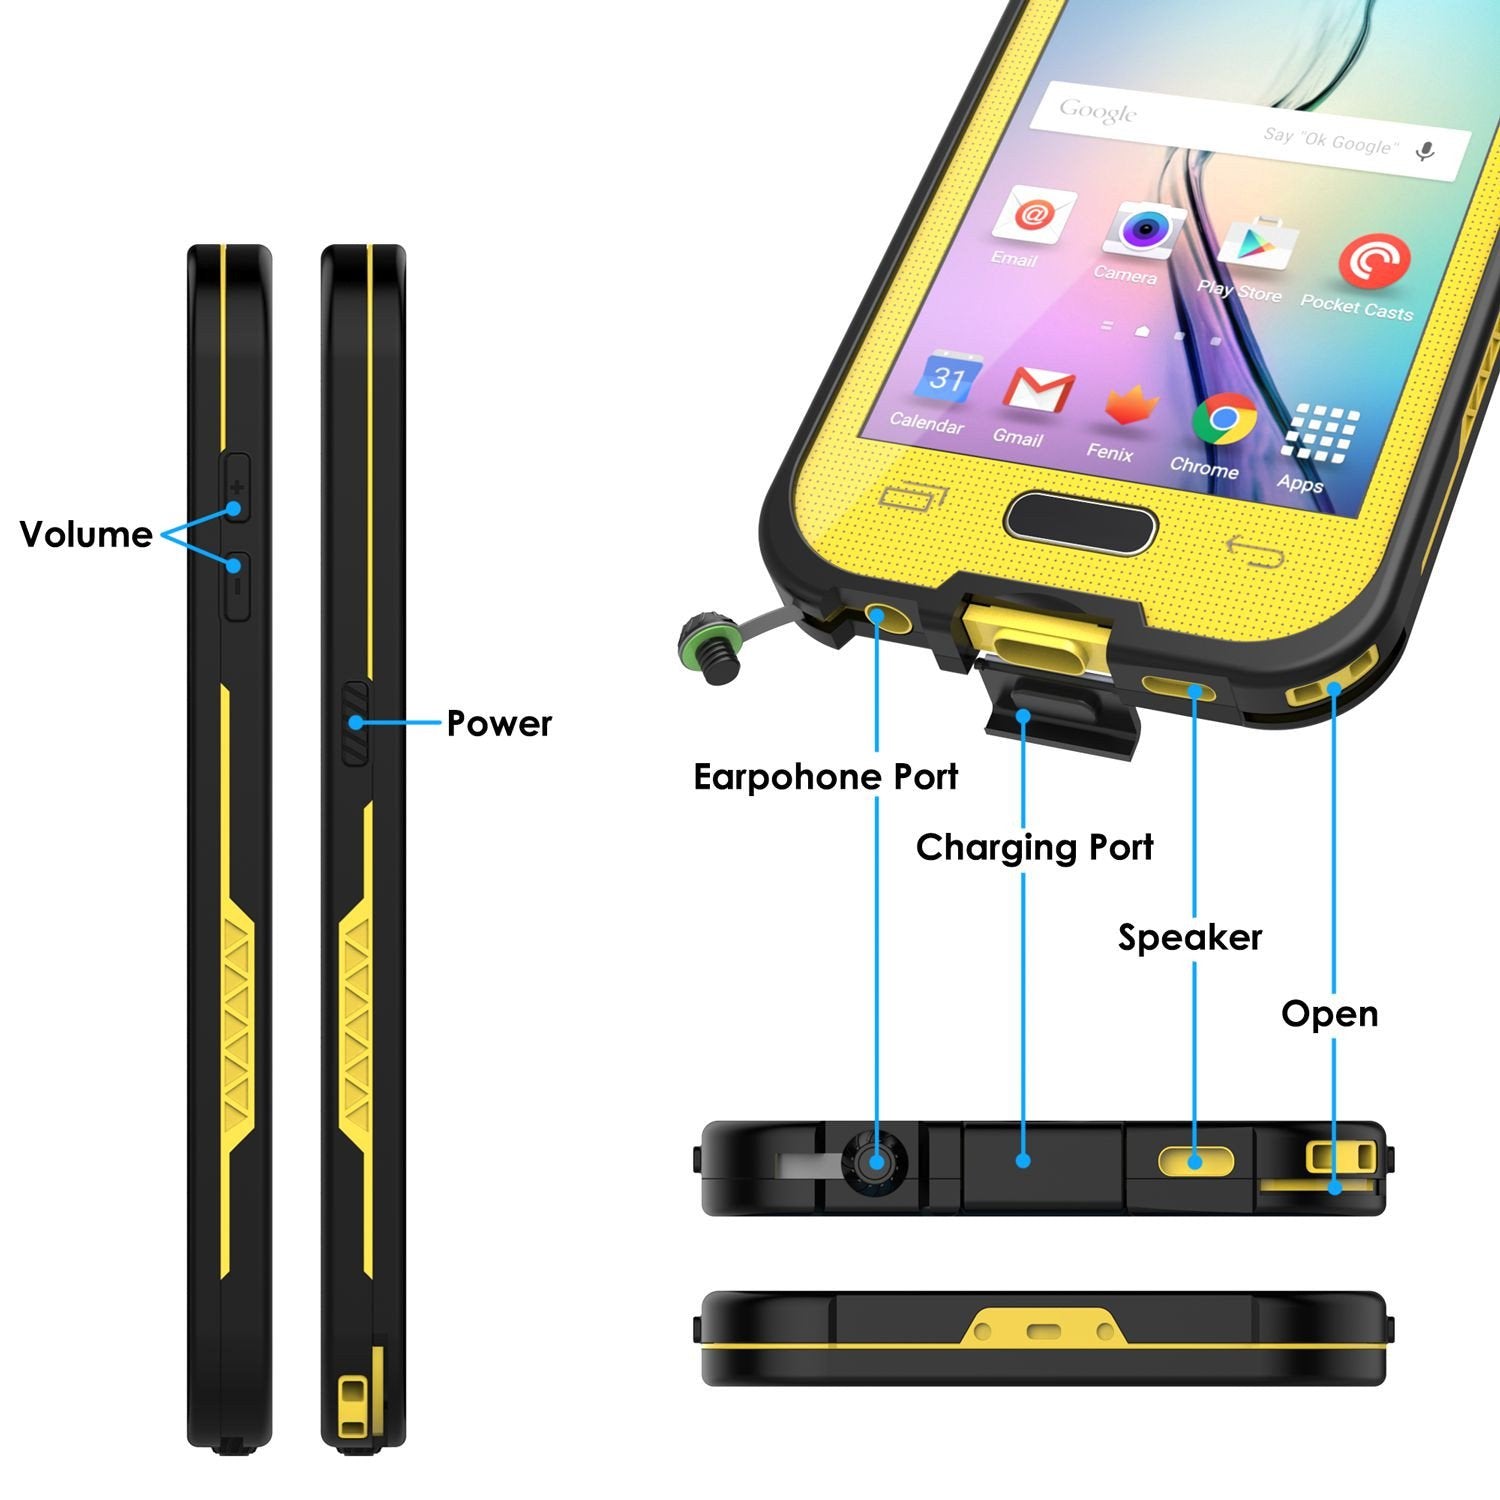 Galaxy S6 Waterproof Case Punkcase SpikeStar Yellow Water/Shock/Dirt/Snow Proof | Lifetime Warranty - PunkCase NZ